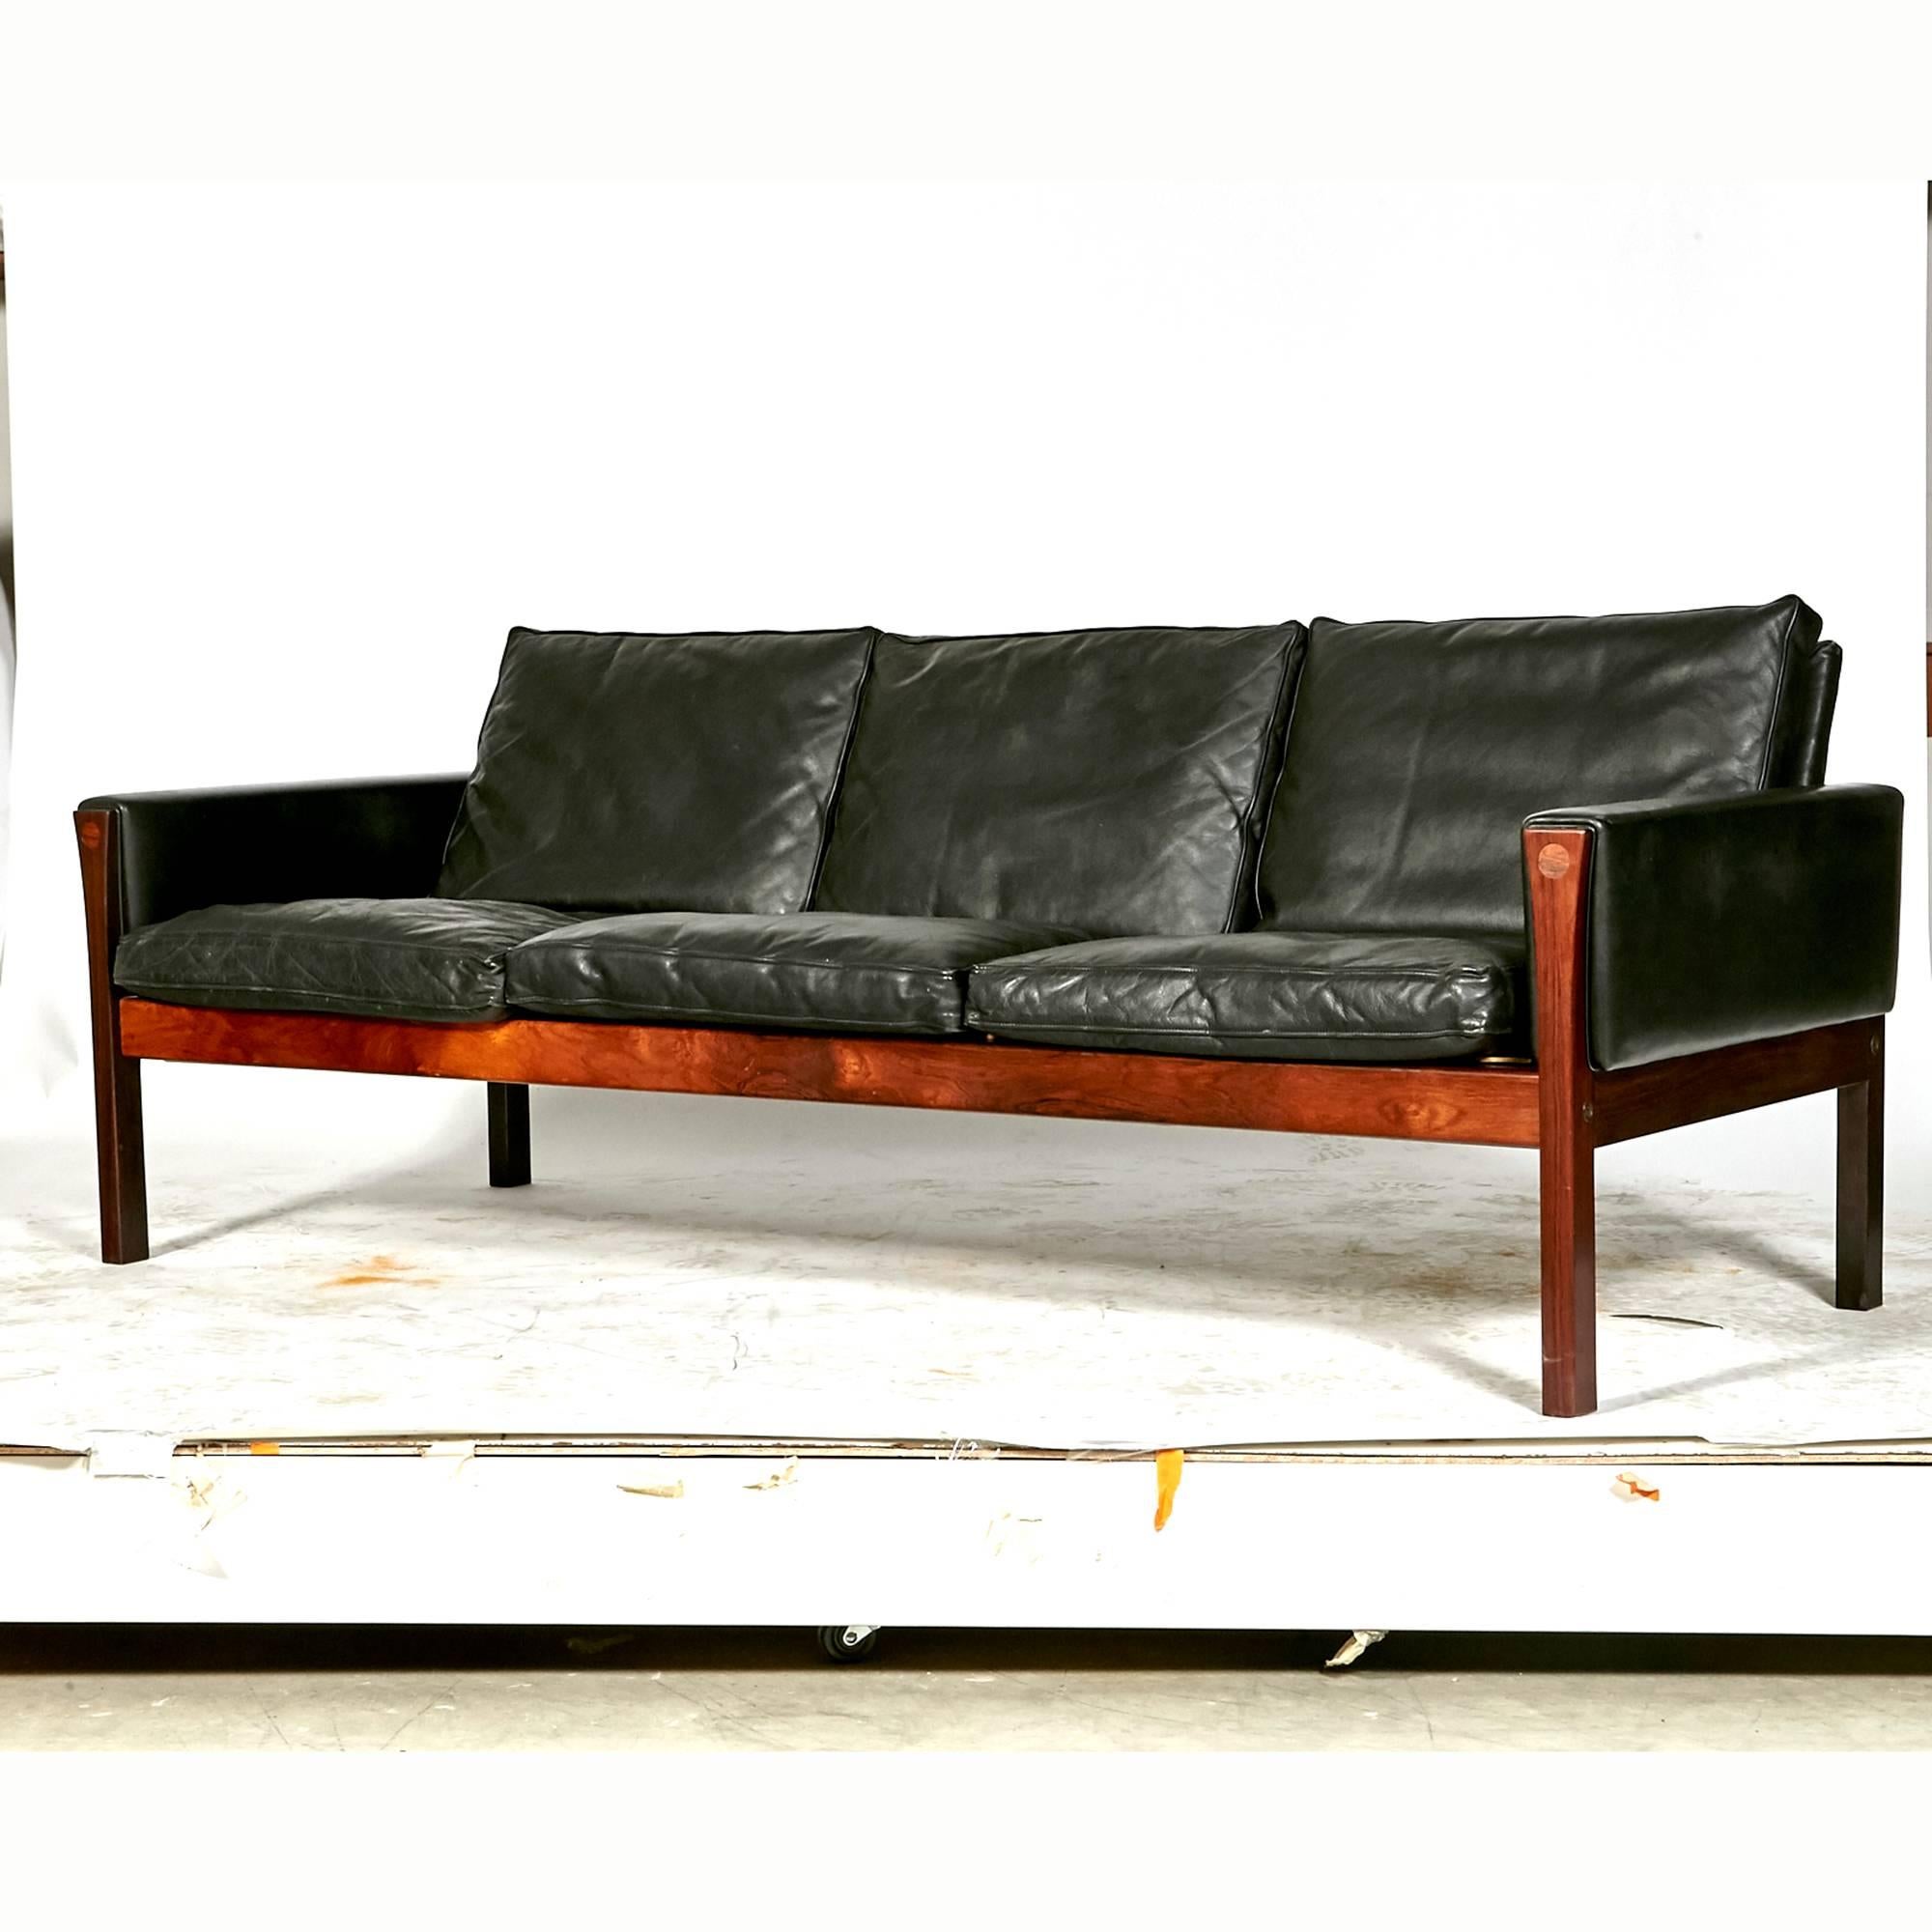 Scandinavian Modern Hans J. Wegner Rosewood and Black Leather Sofa, Denmark